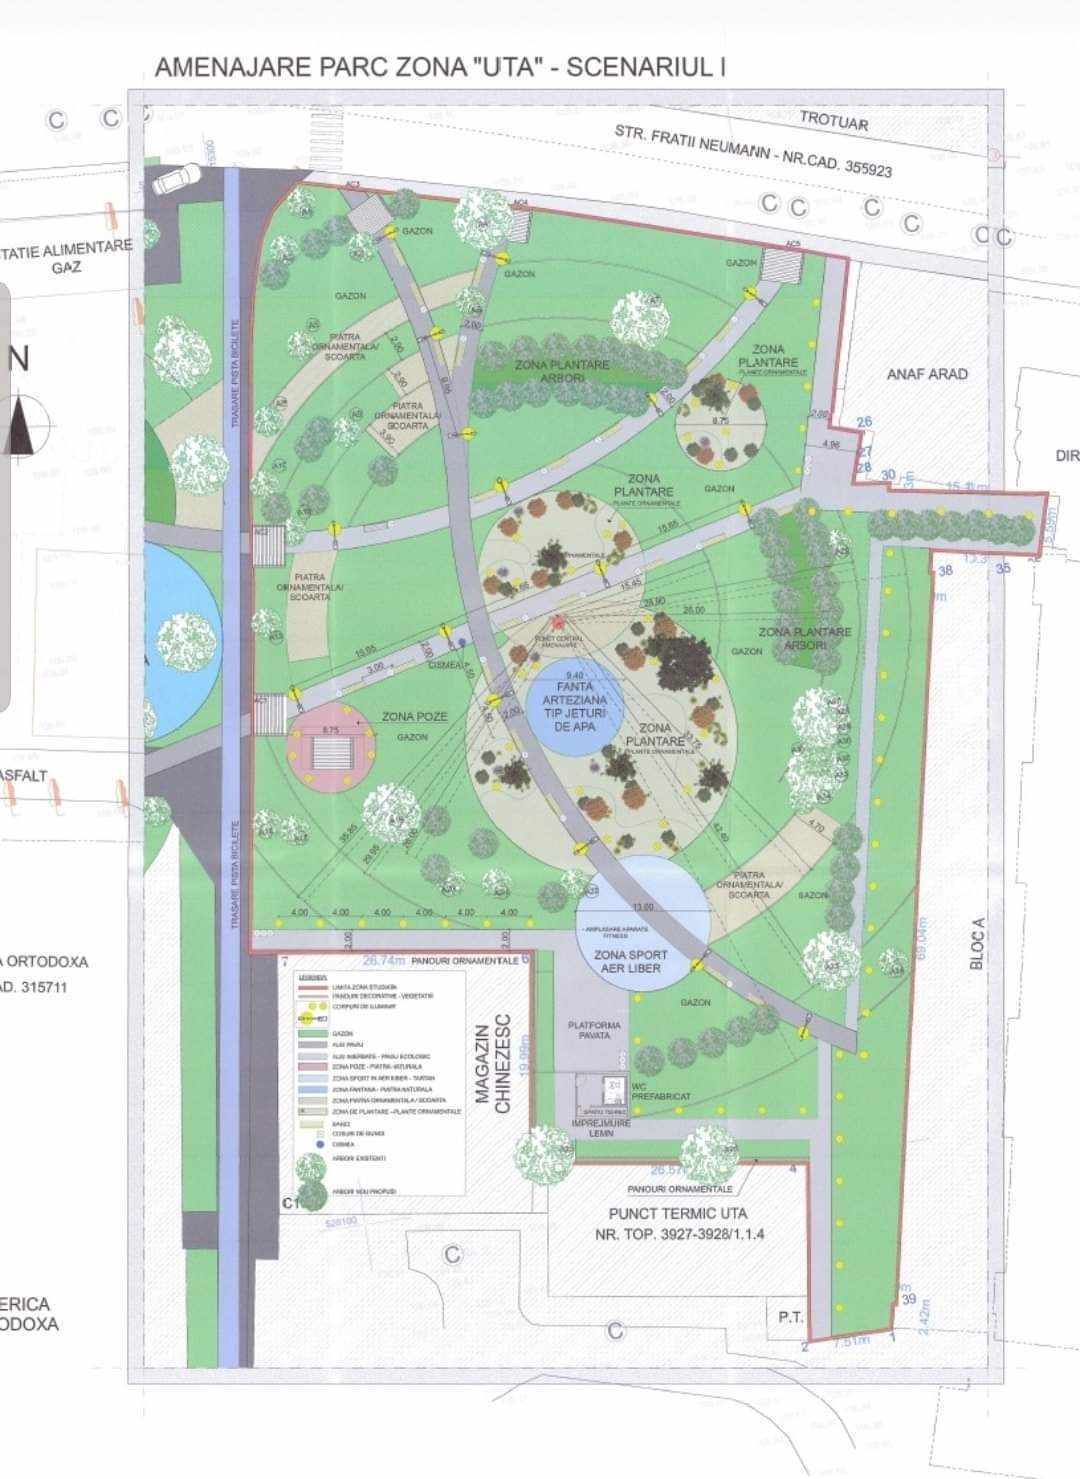 Studiul de fezabilitate pentru amenajarea unui parc în zona UTA a fost aprobat